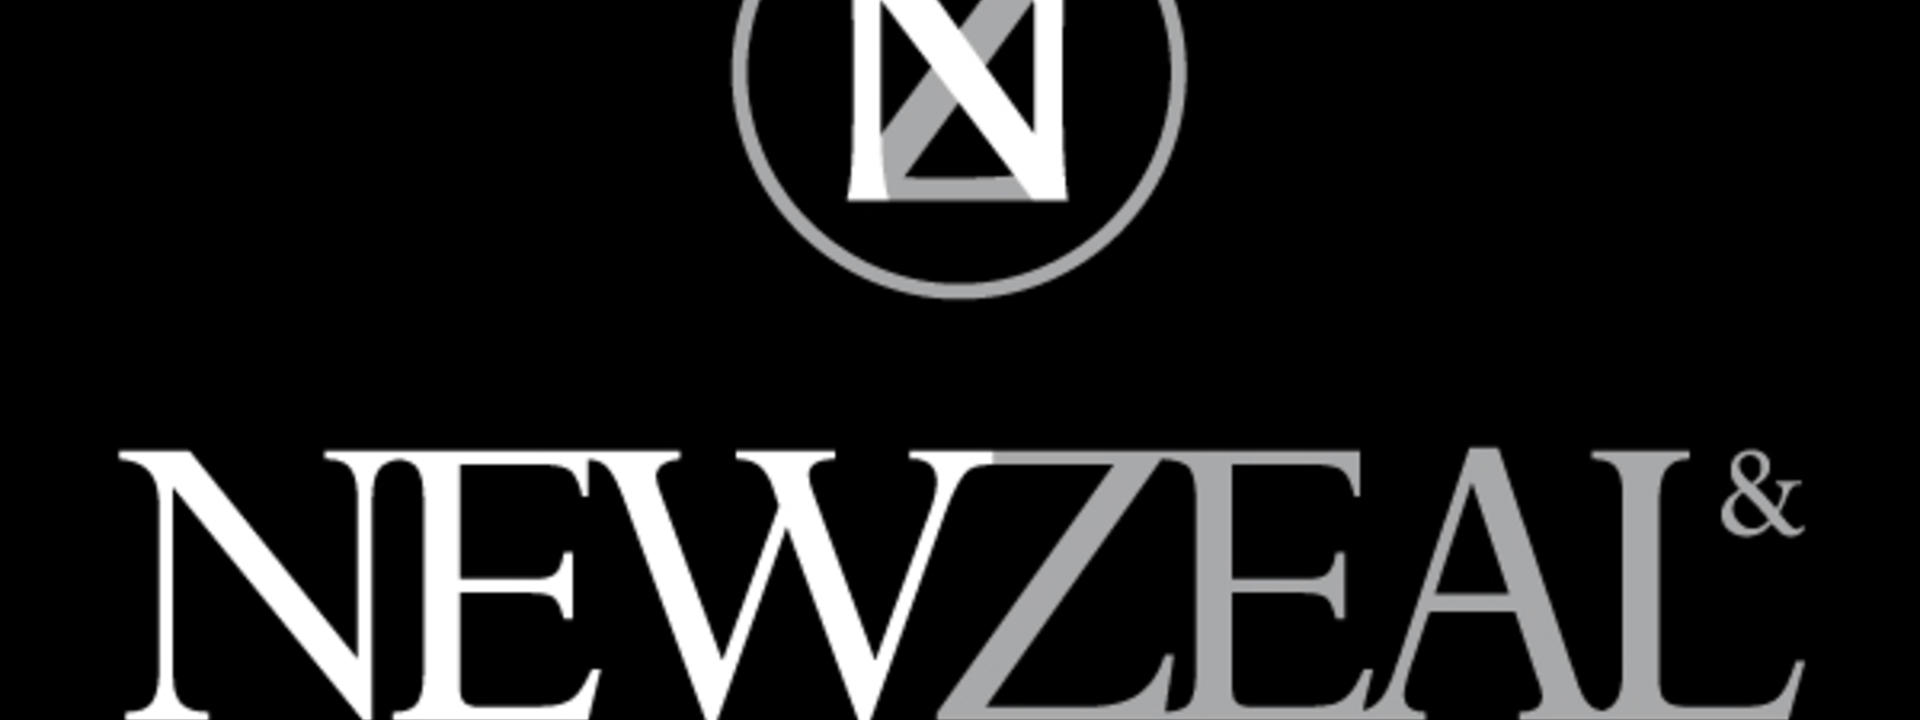 newzeal_logo.jpg